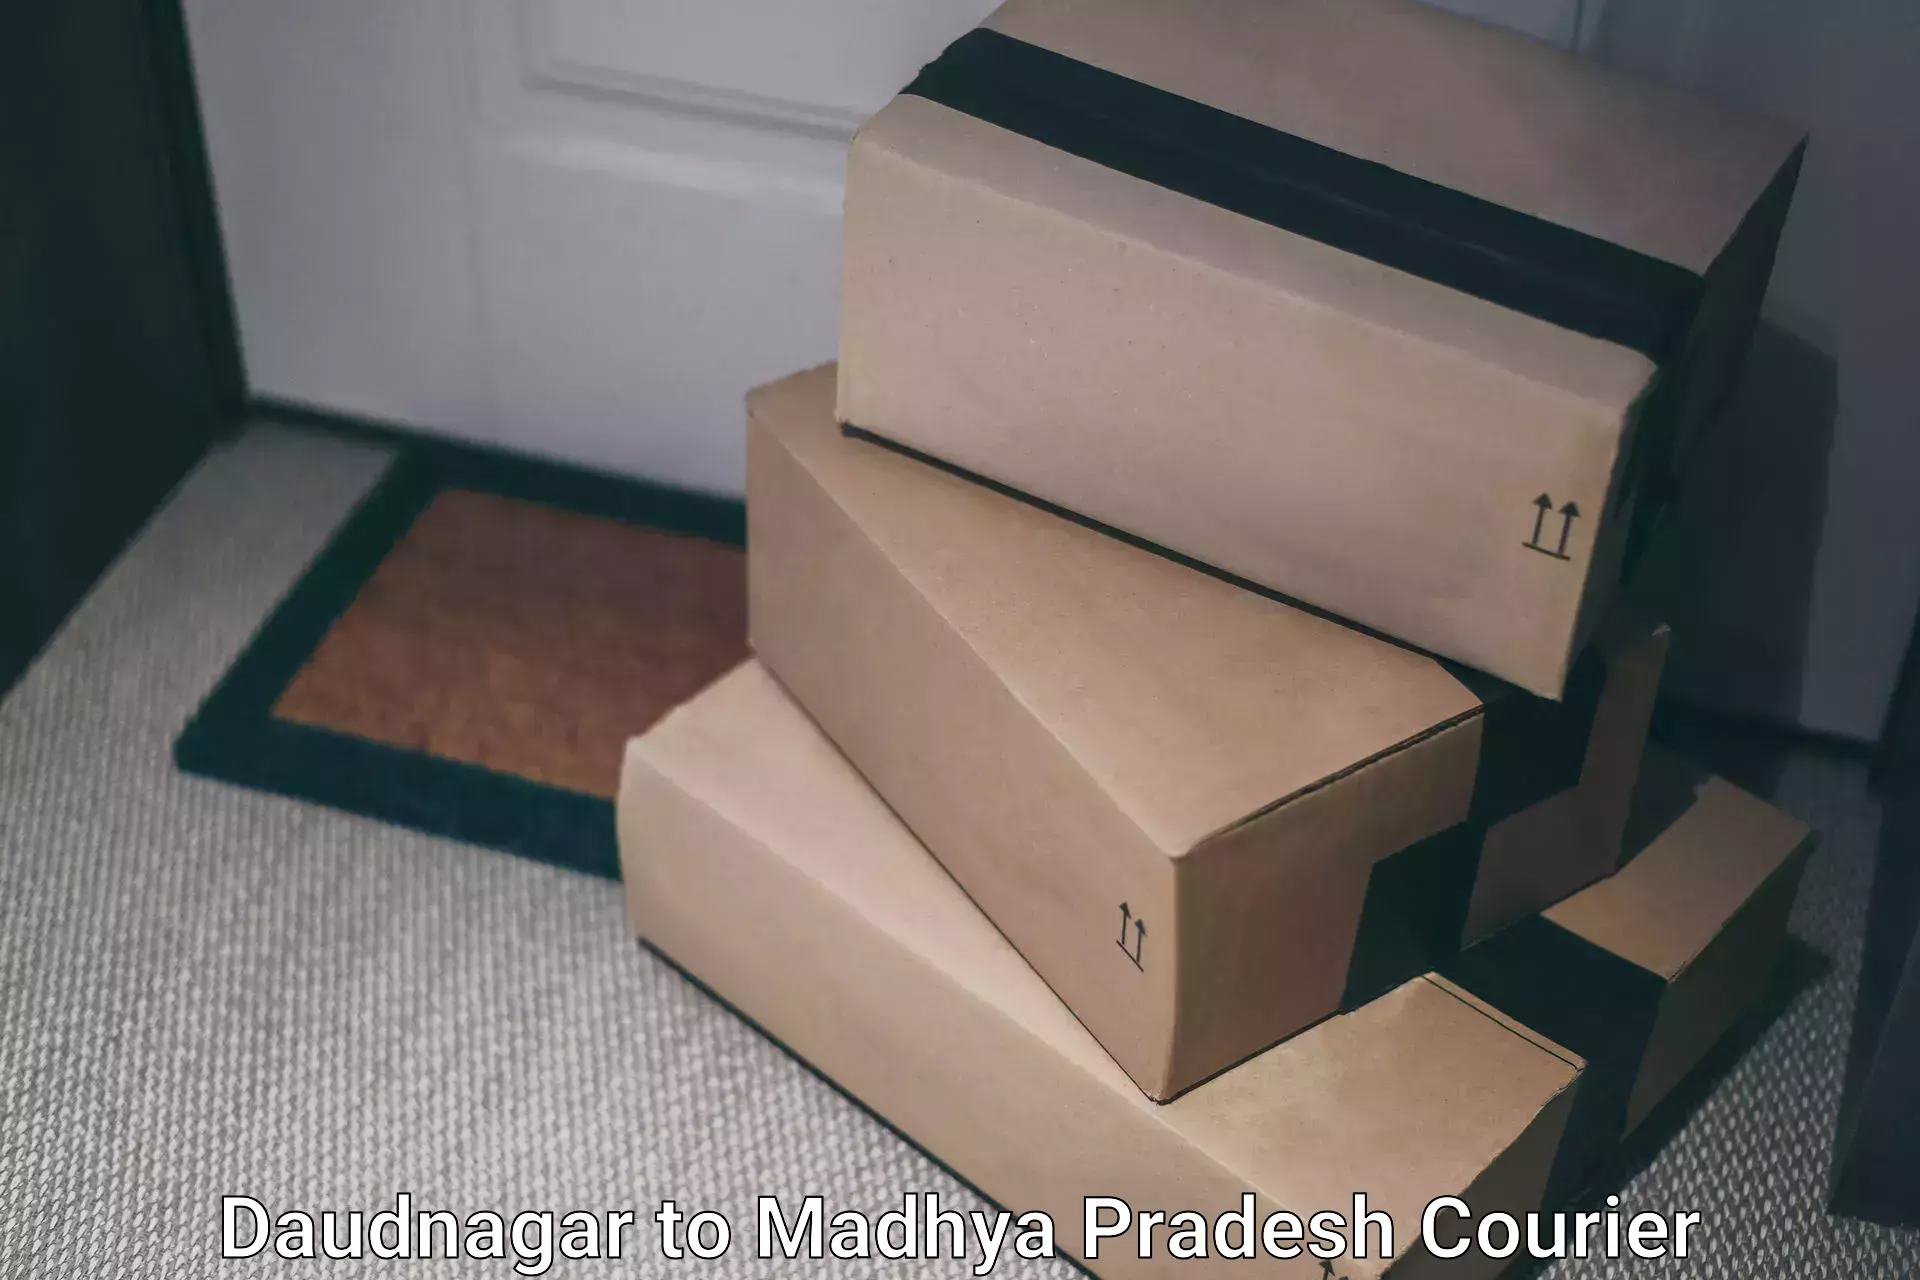 Holiday shipping services in Daudnagar to Madhya Pradesh